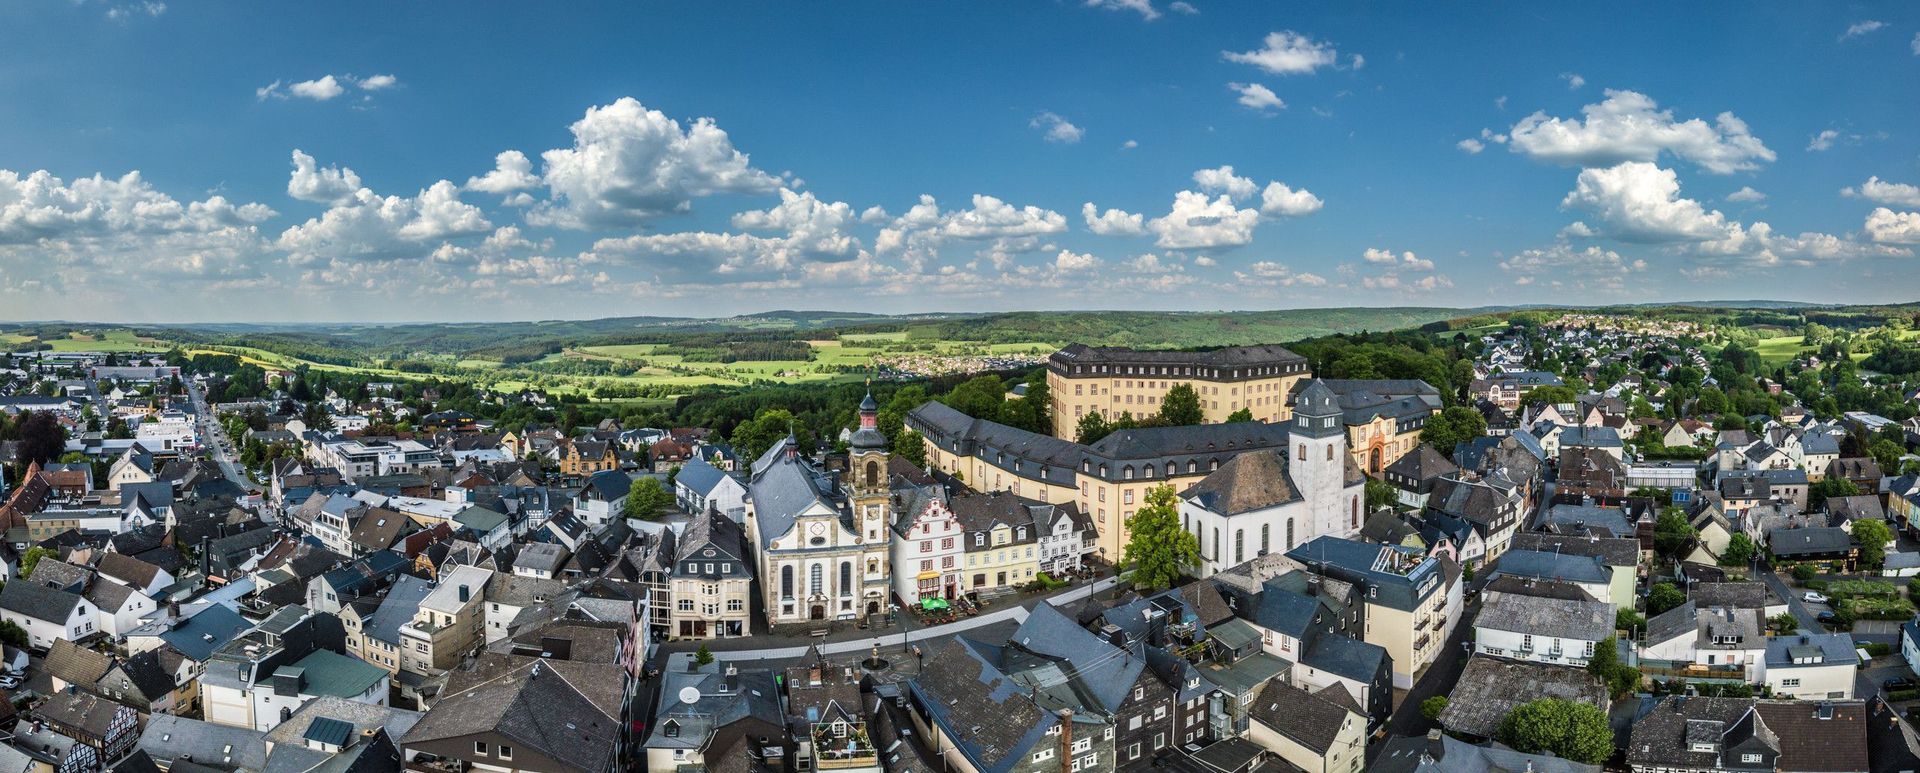 Ein toller Anblick von oben auf die historische Innenstadt von Hachenburg